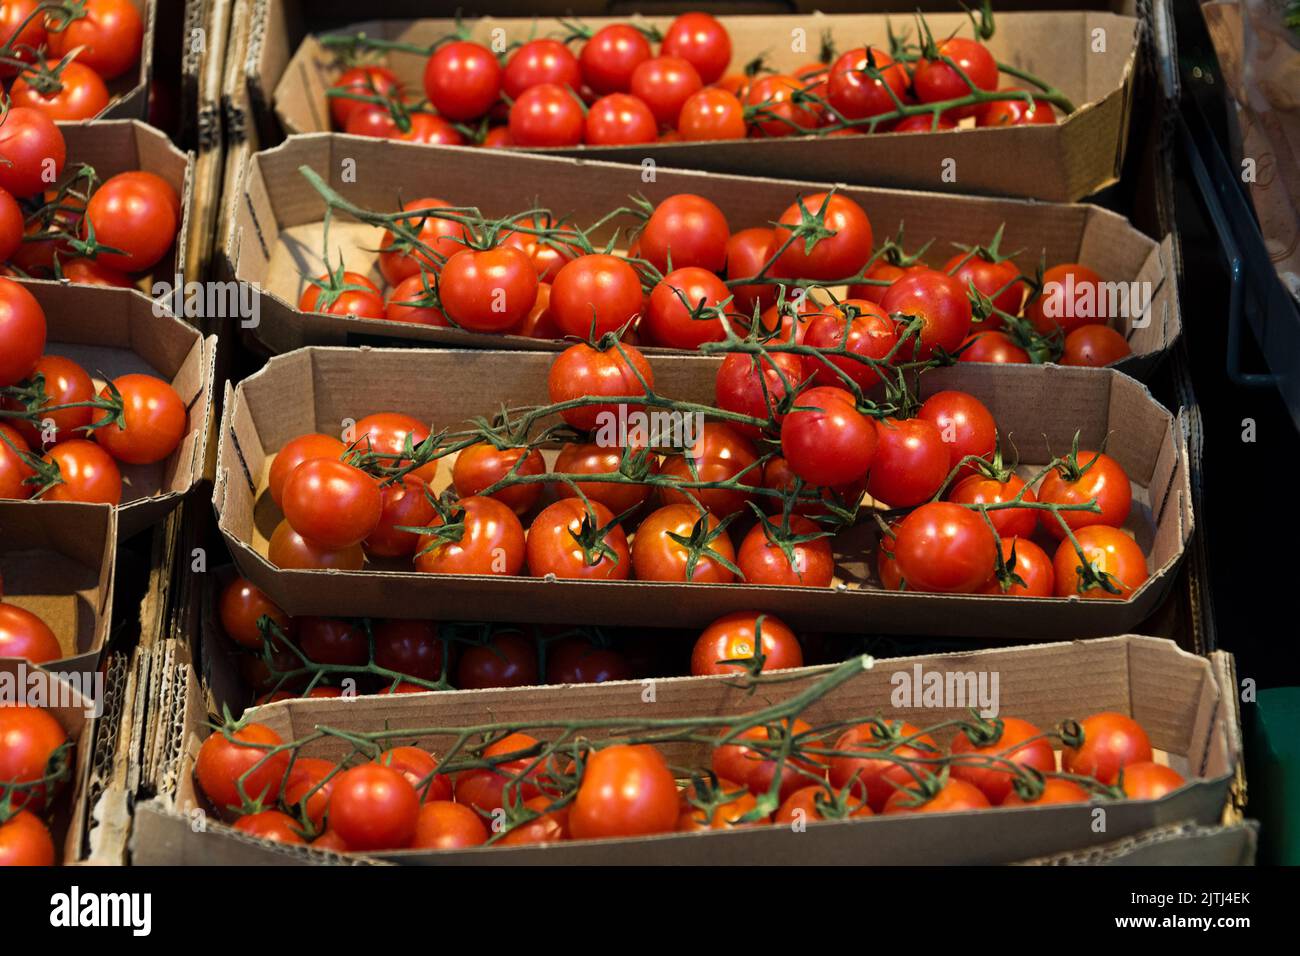 Pomodori freschi rossi in scatole al banco del supermercato. Pomodori ciliegini su rami in scatole di carta artigianale in vendita Foto Stock